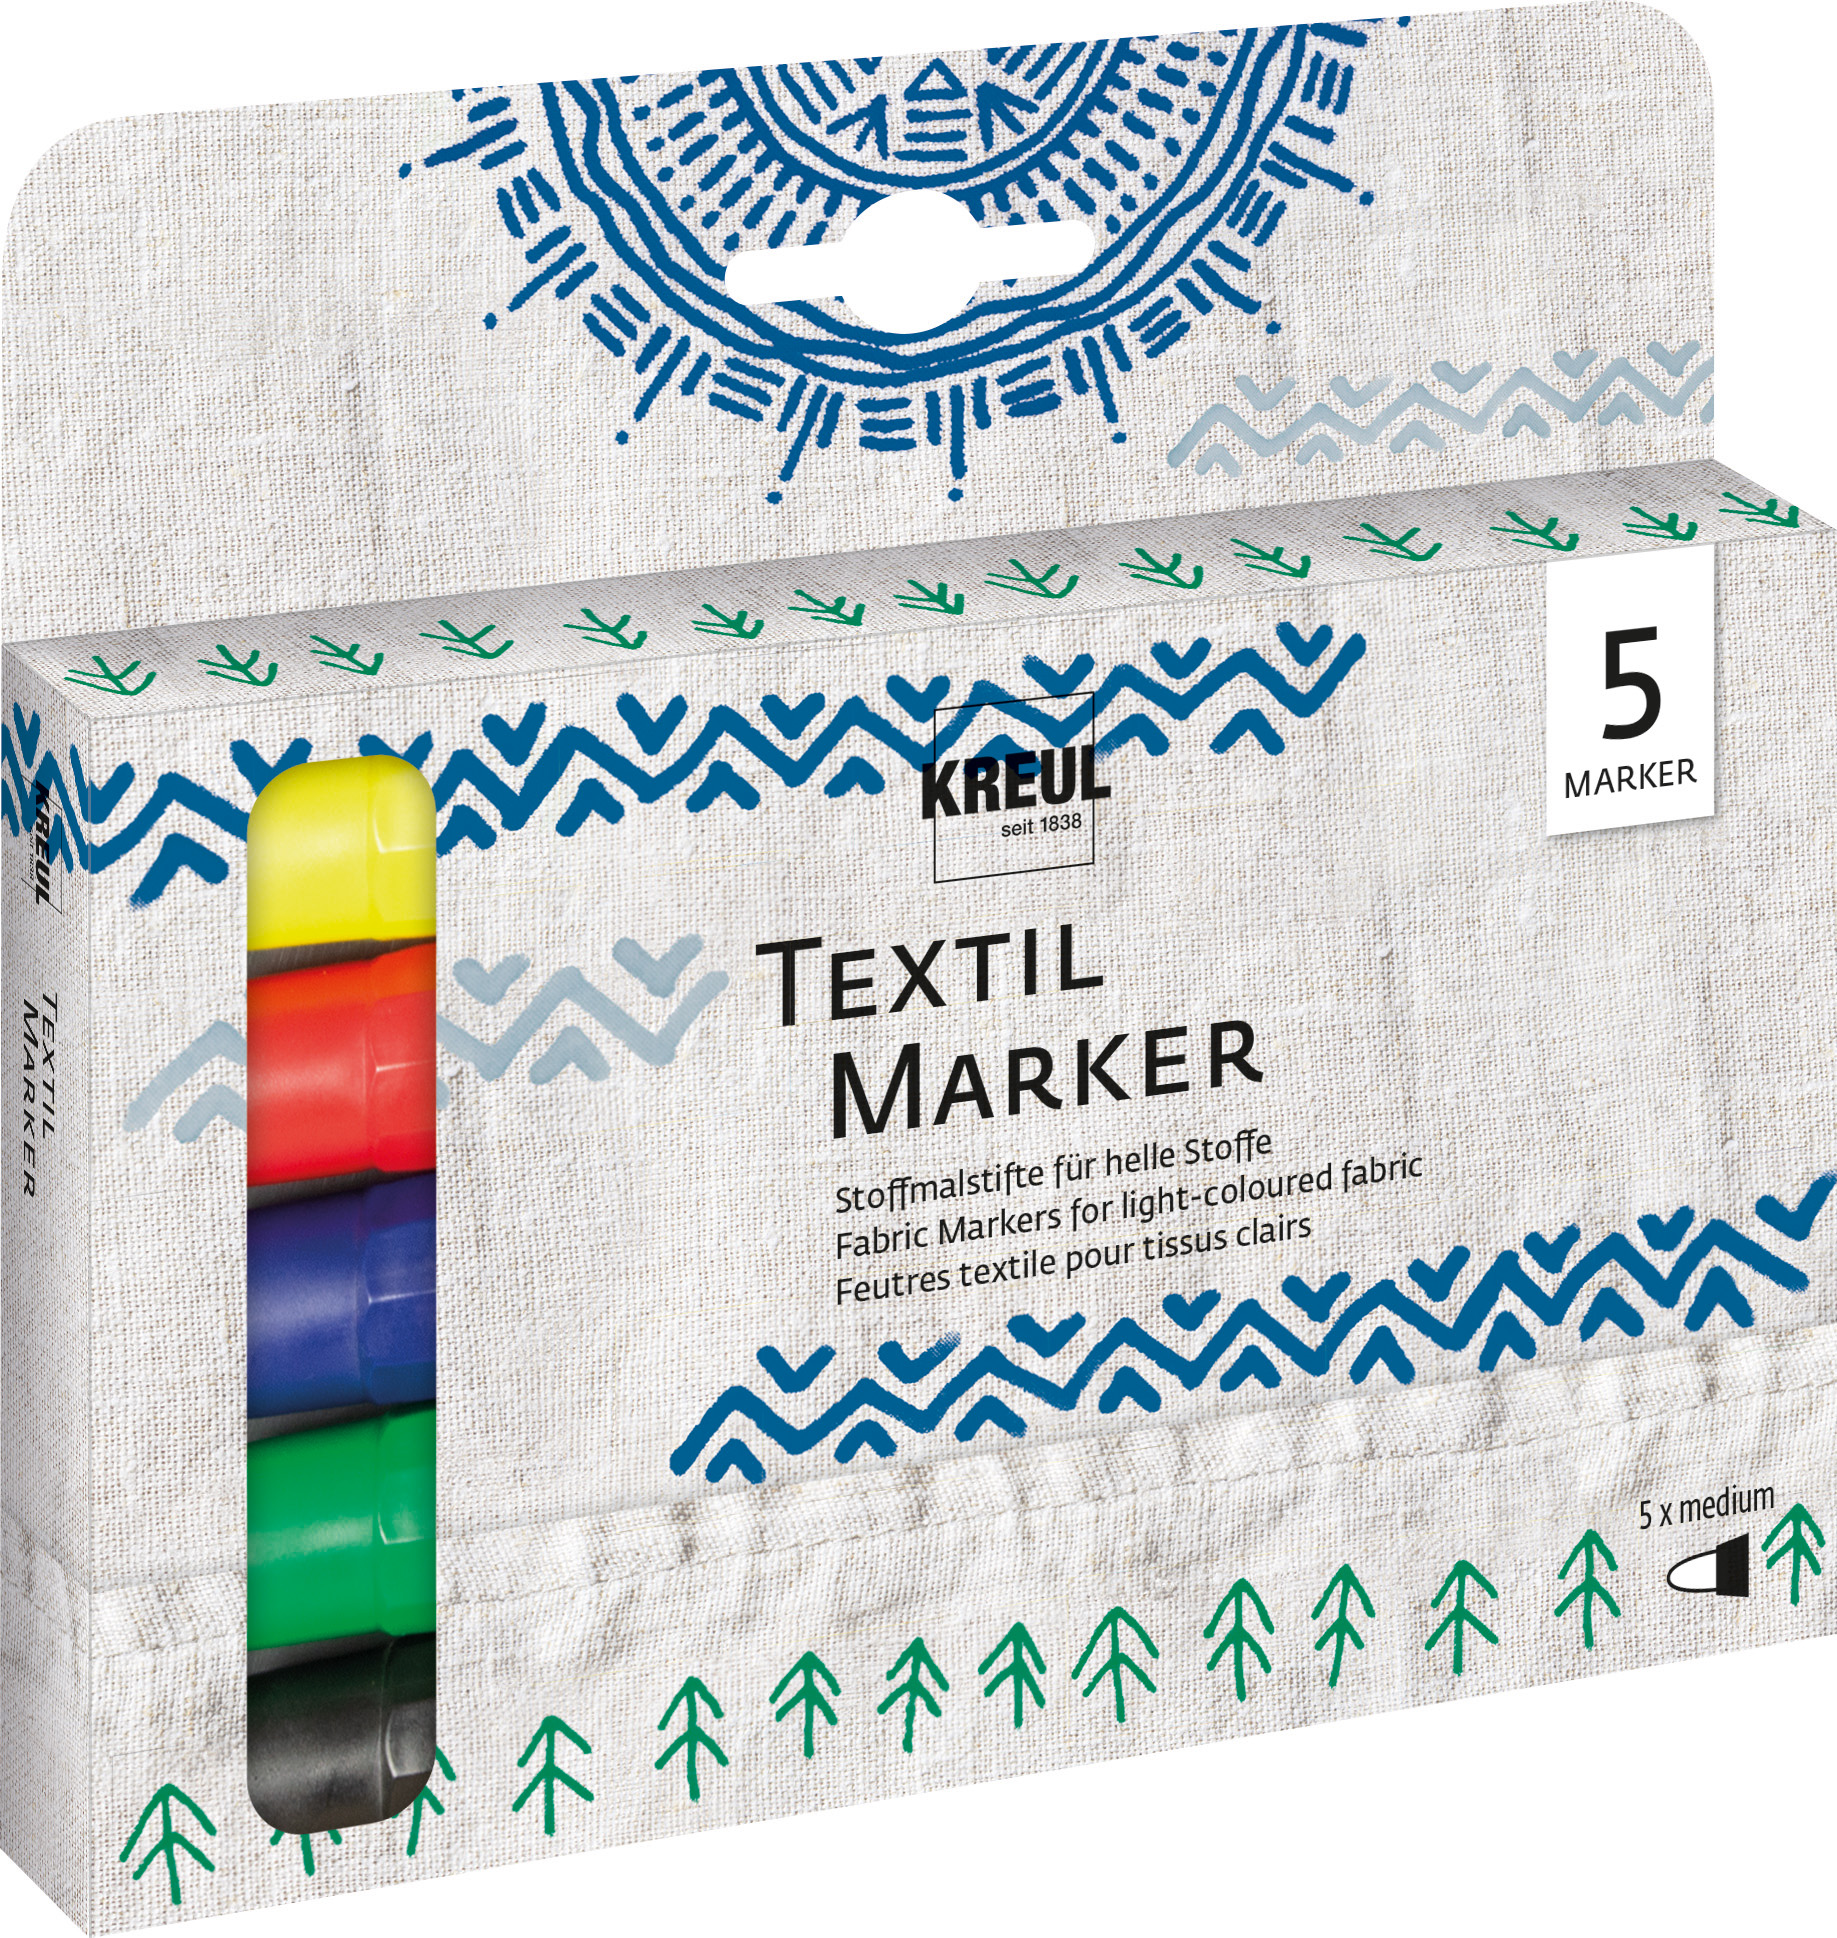 KREUL Textil Marker medium 5er Set Nettopreis